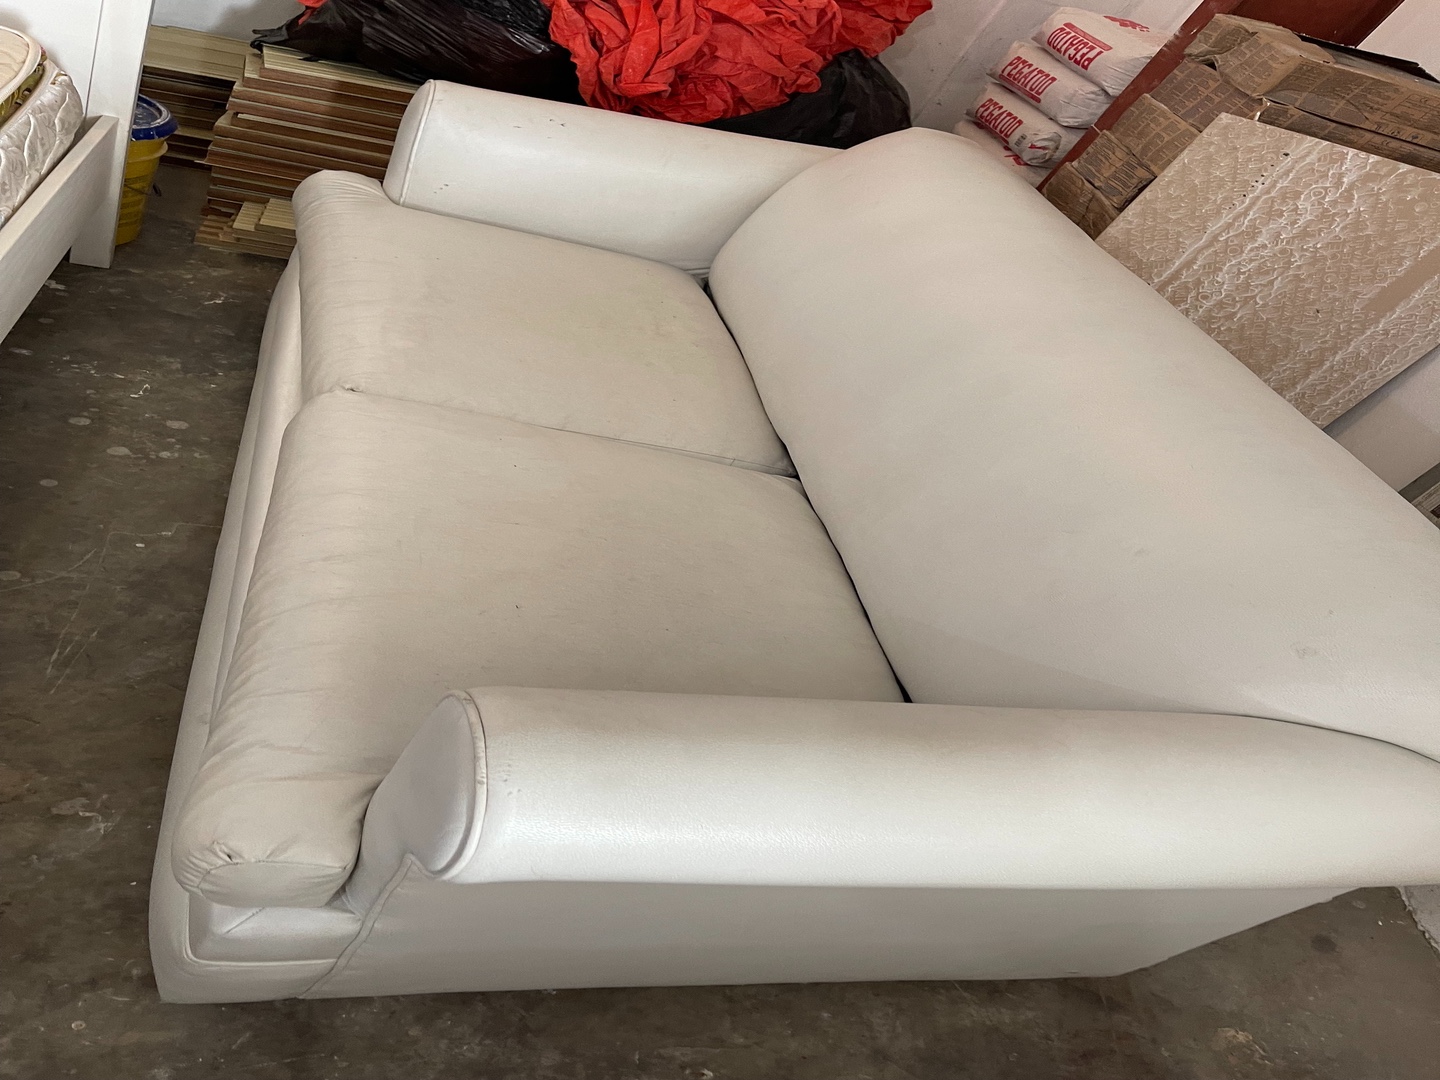 muebles y colchones - sofa cama en vinyl blanco